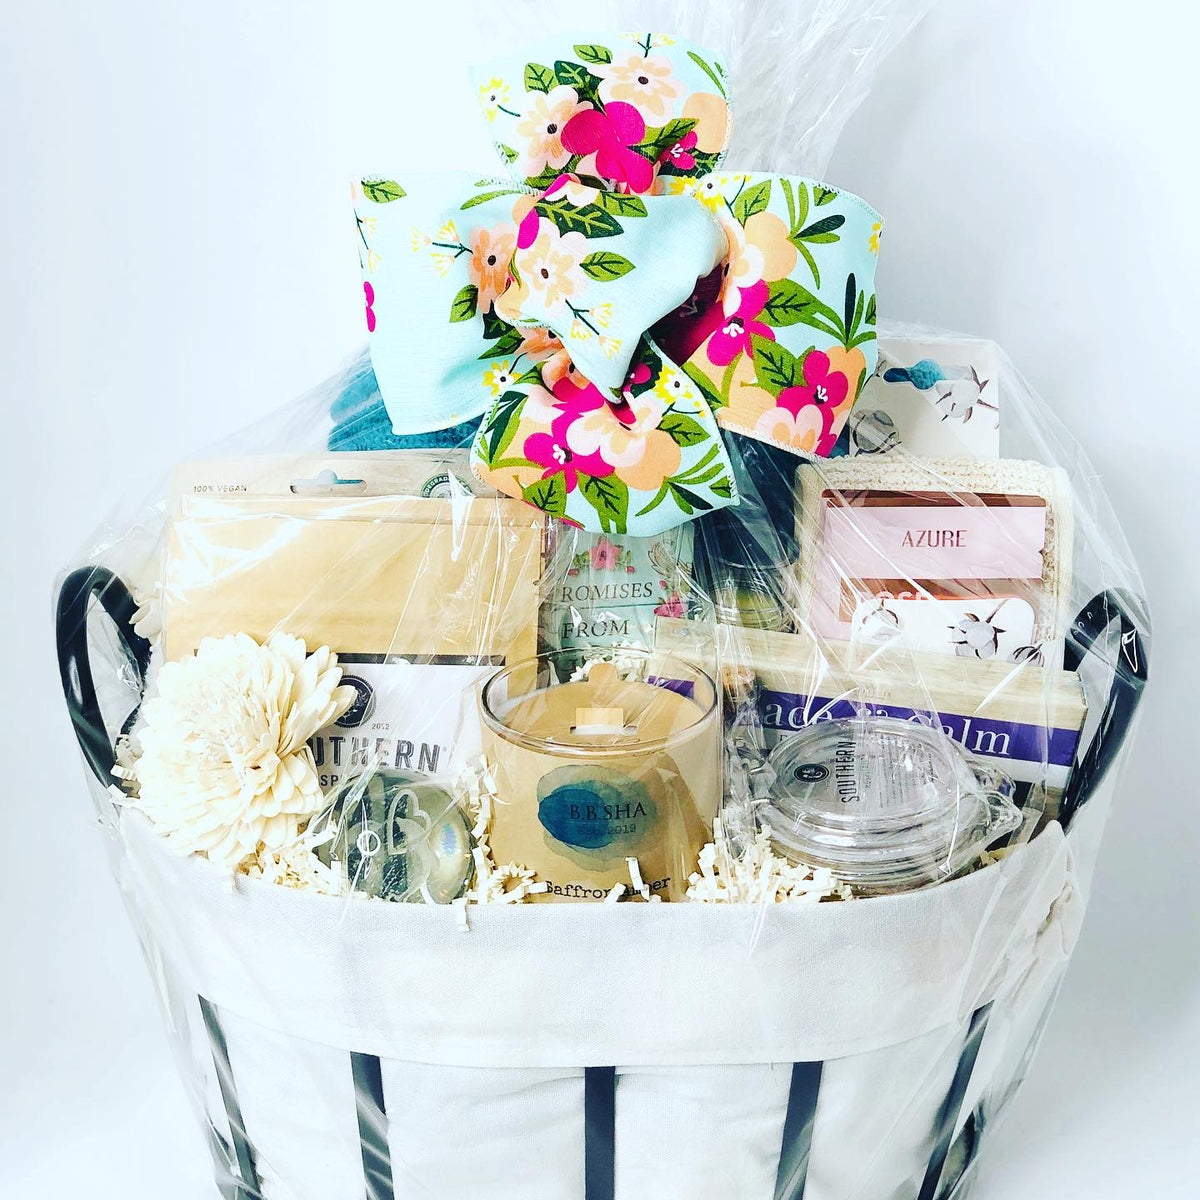 CUSTOM ORDER Option-custom Gift Baskets, New Home Gift Basket